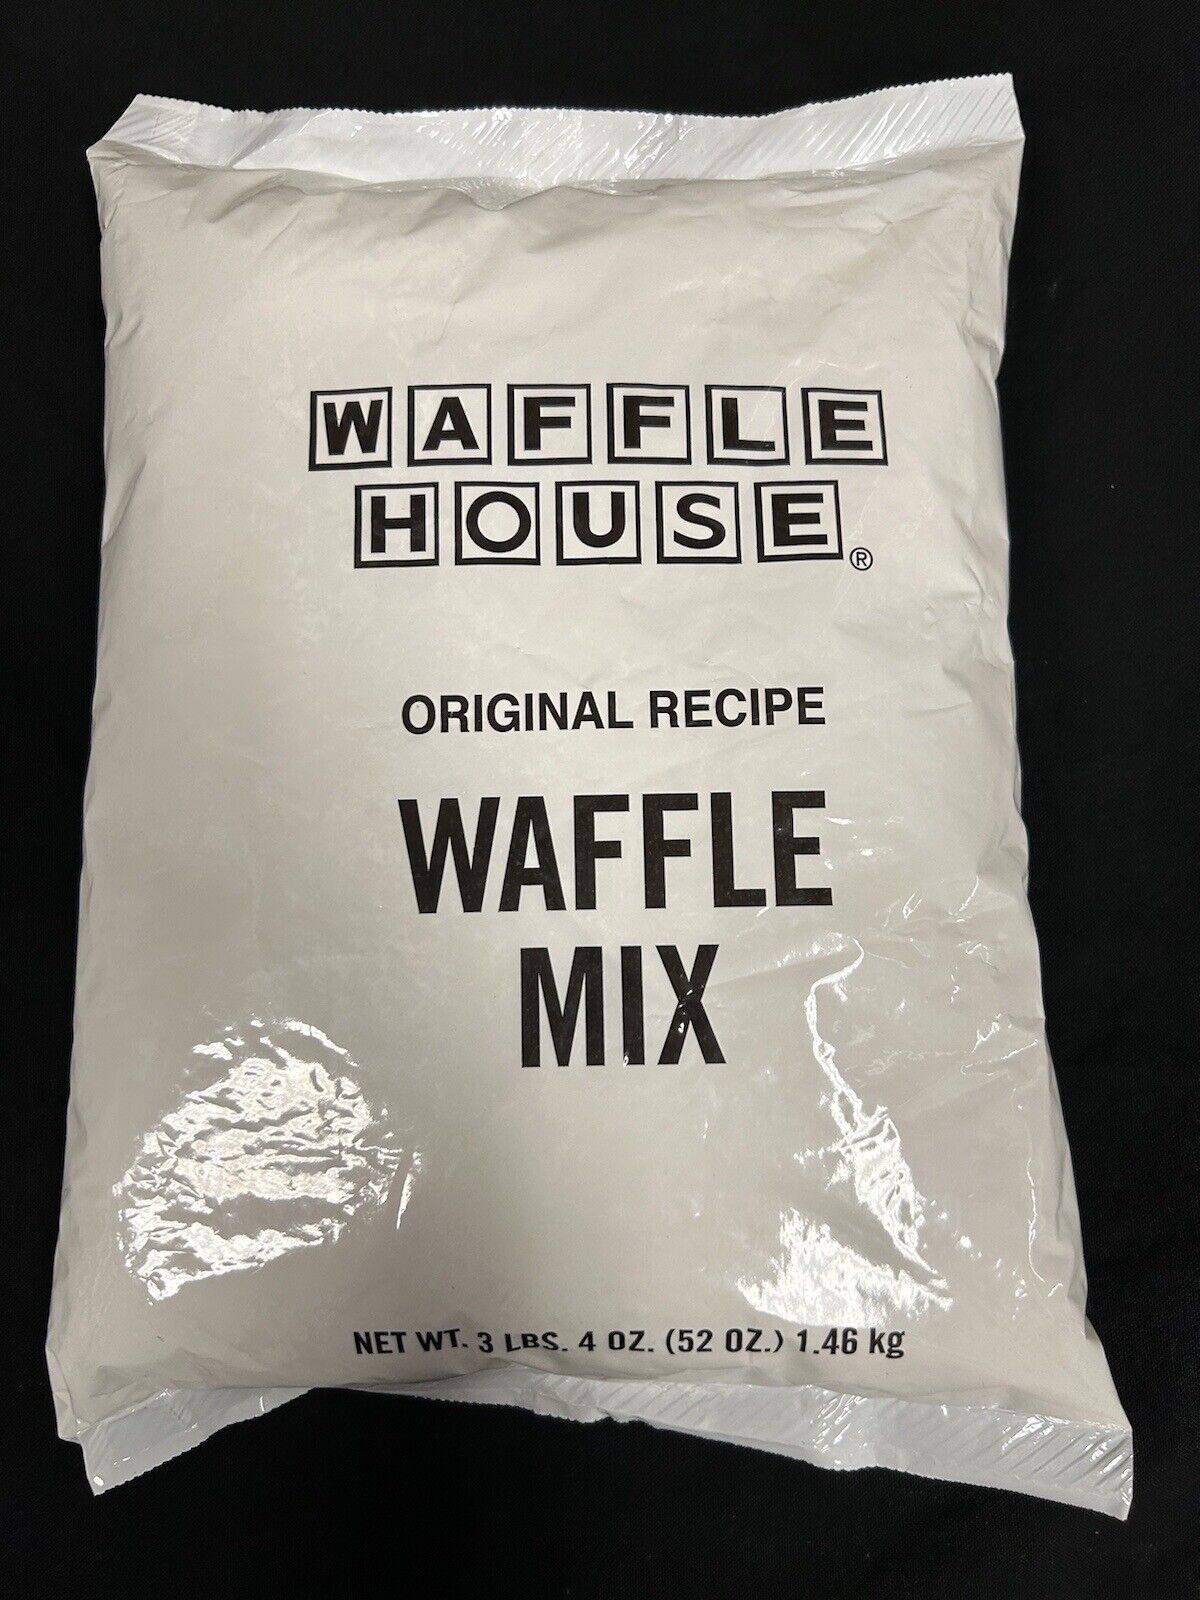 Waffle House Original Recipe Waffle Mix 3 lbs 4 oz (52 oz/1.46 kg) - Unopened